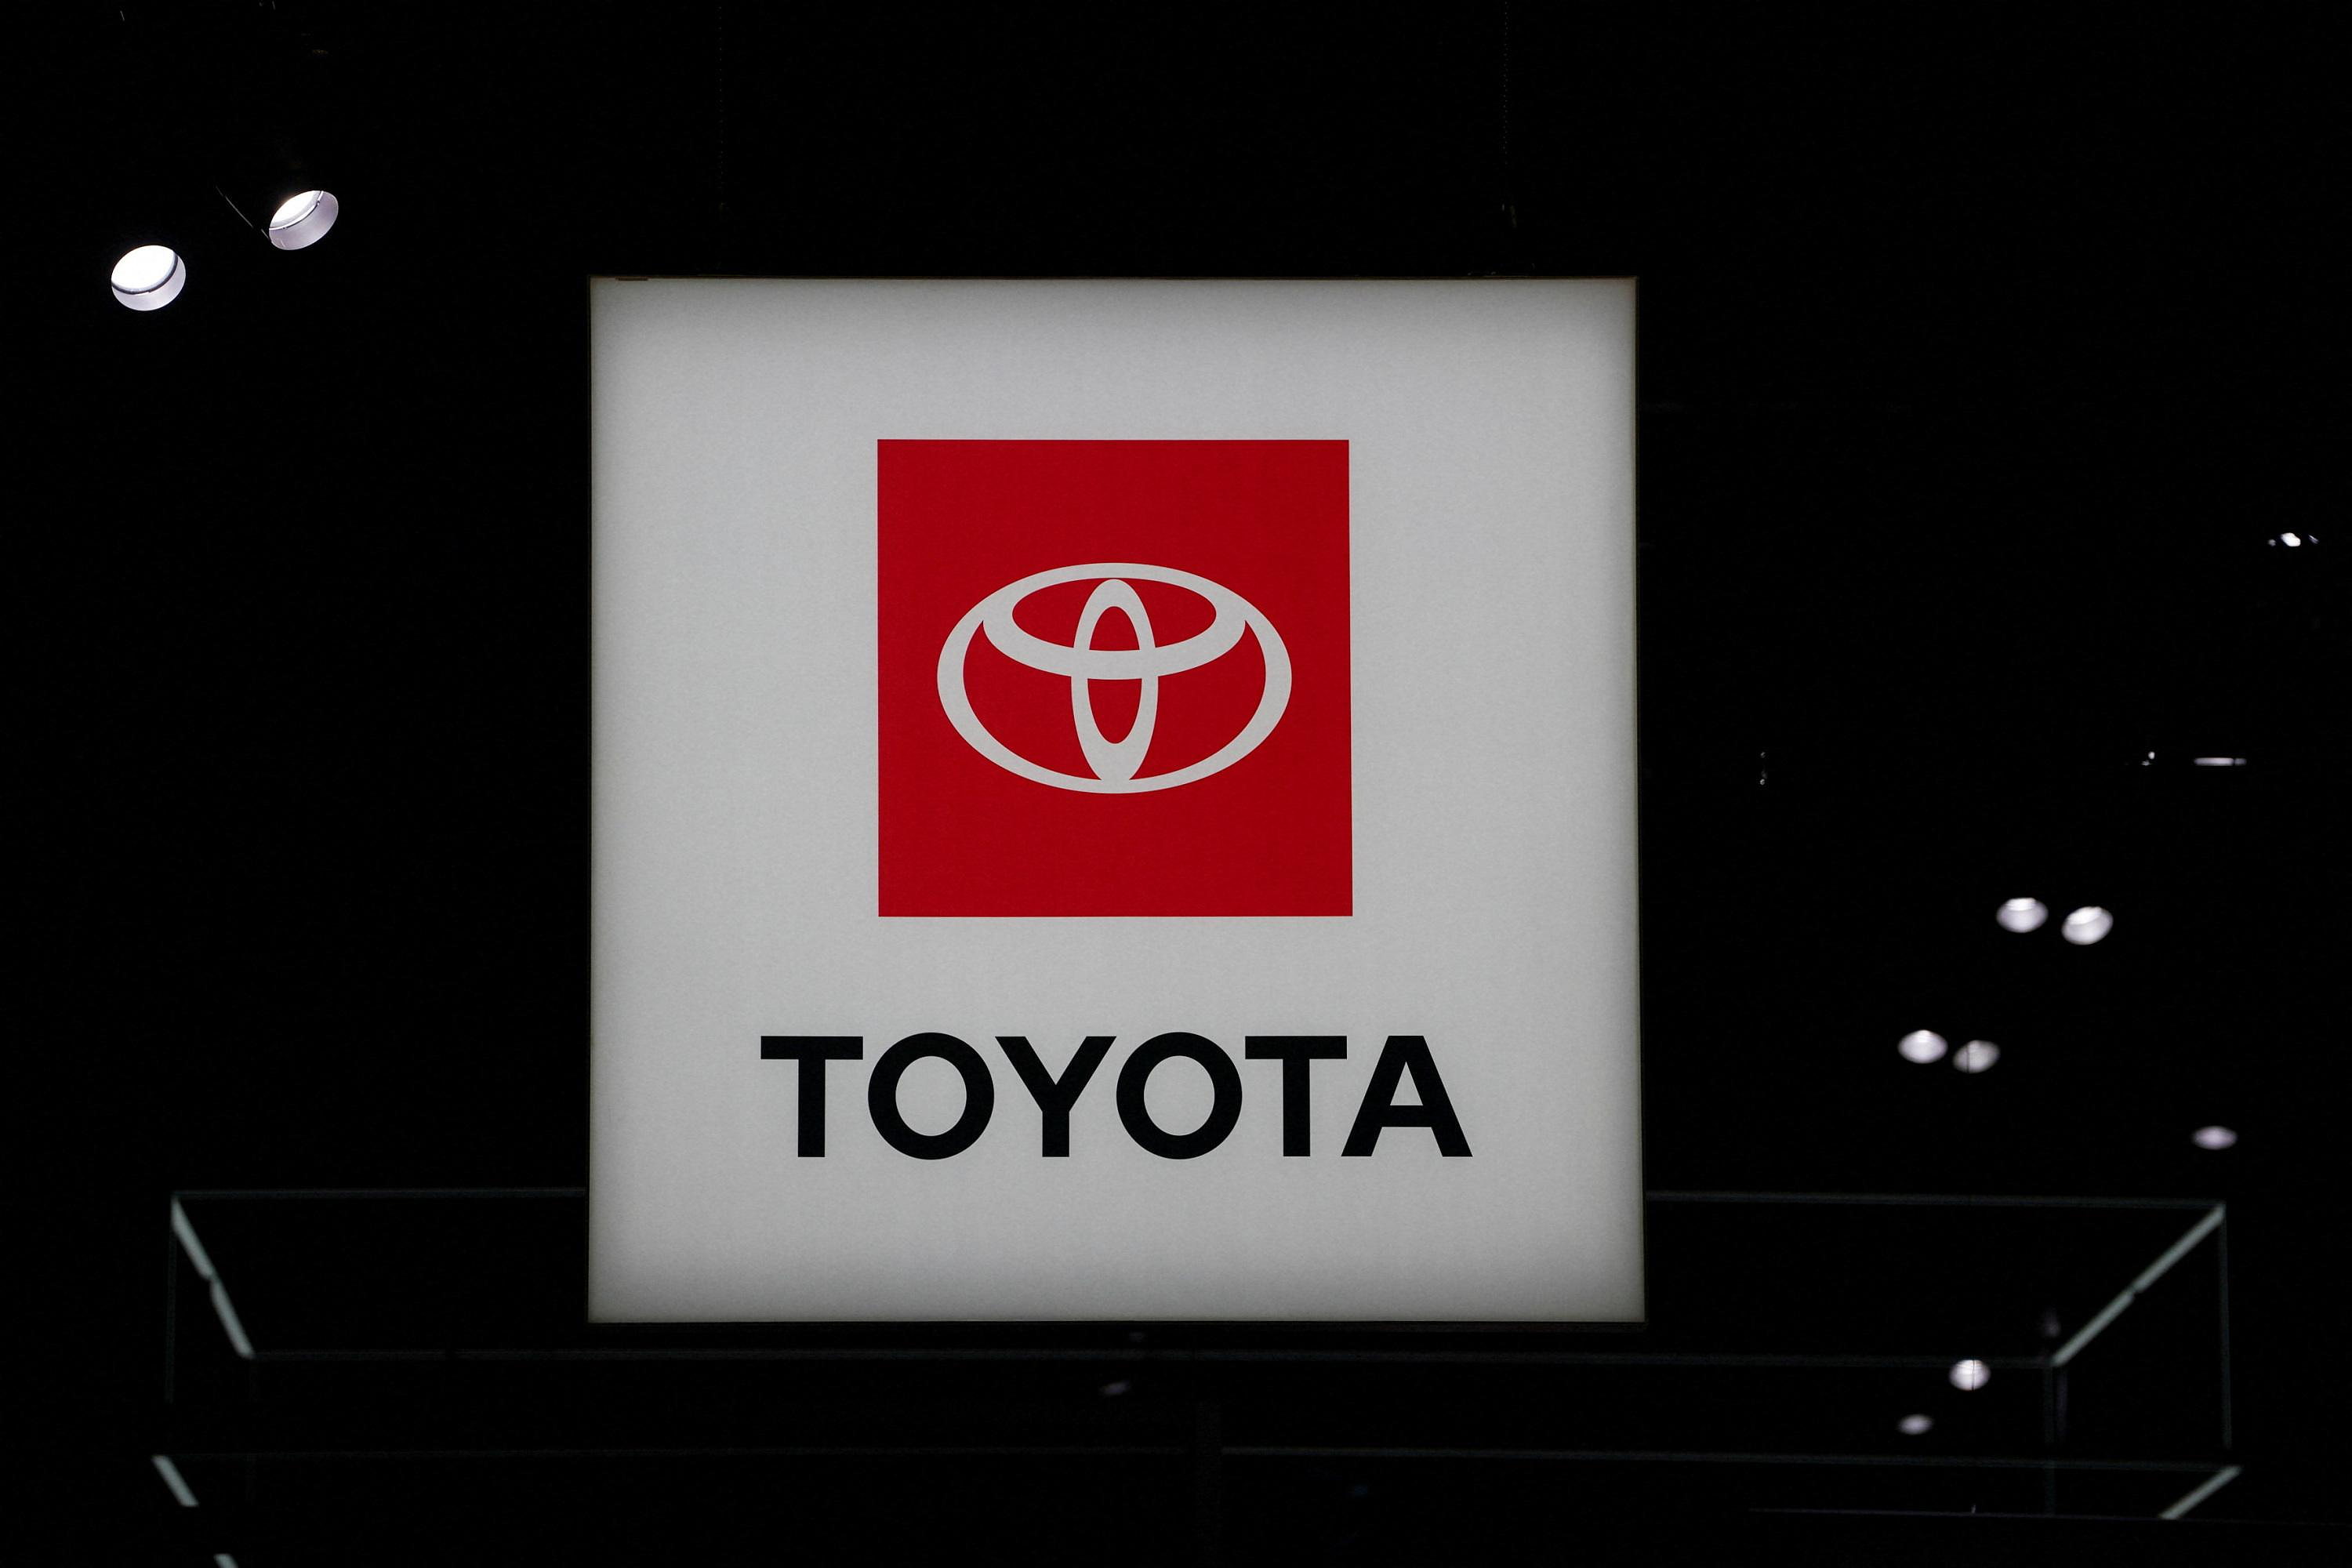 Toyota suspends deliveries of ten diesel models after rigged test scandal